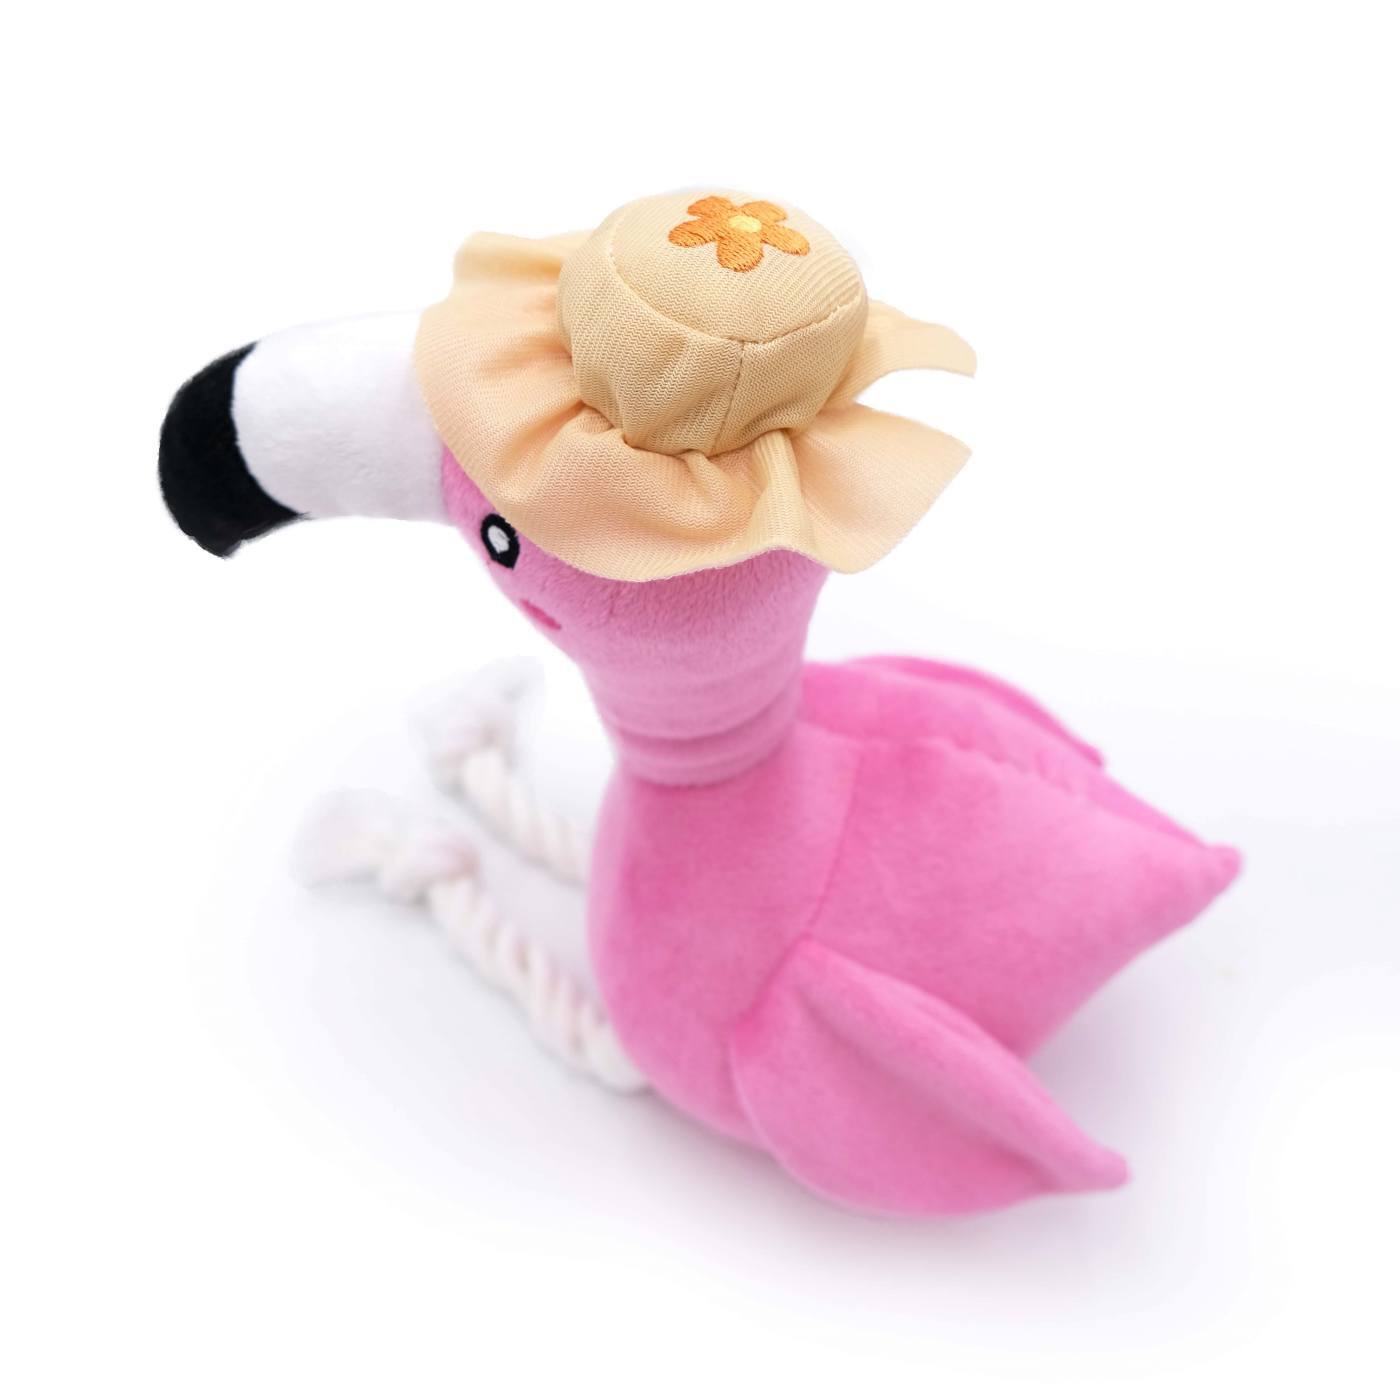 Zippy Paws Playful Pal Plush Squeaker Rope Dog Toy - Freya the Flamingo  image 1